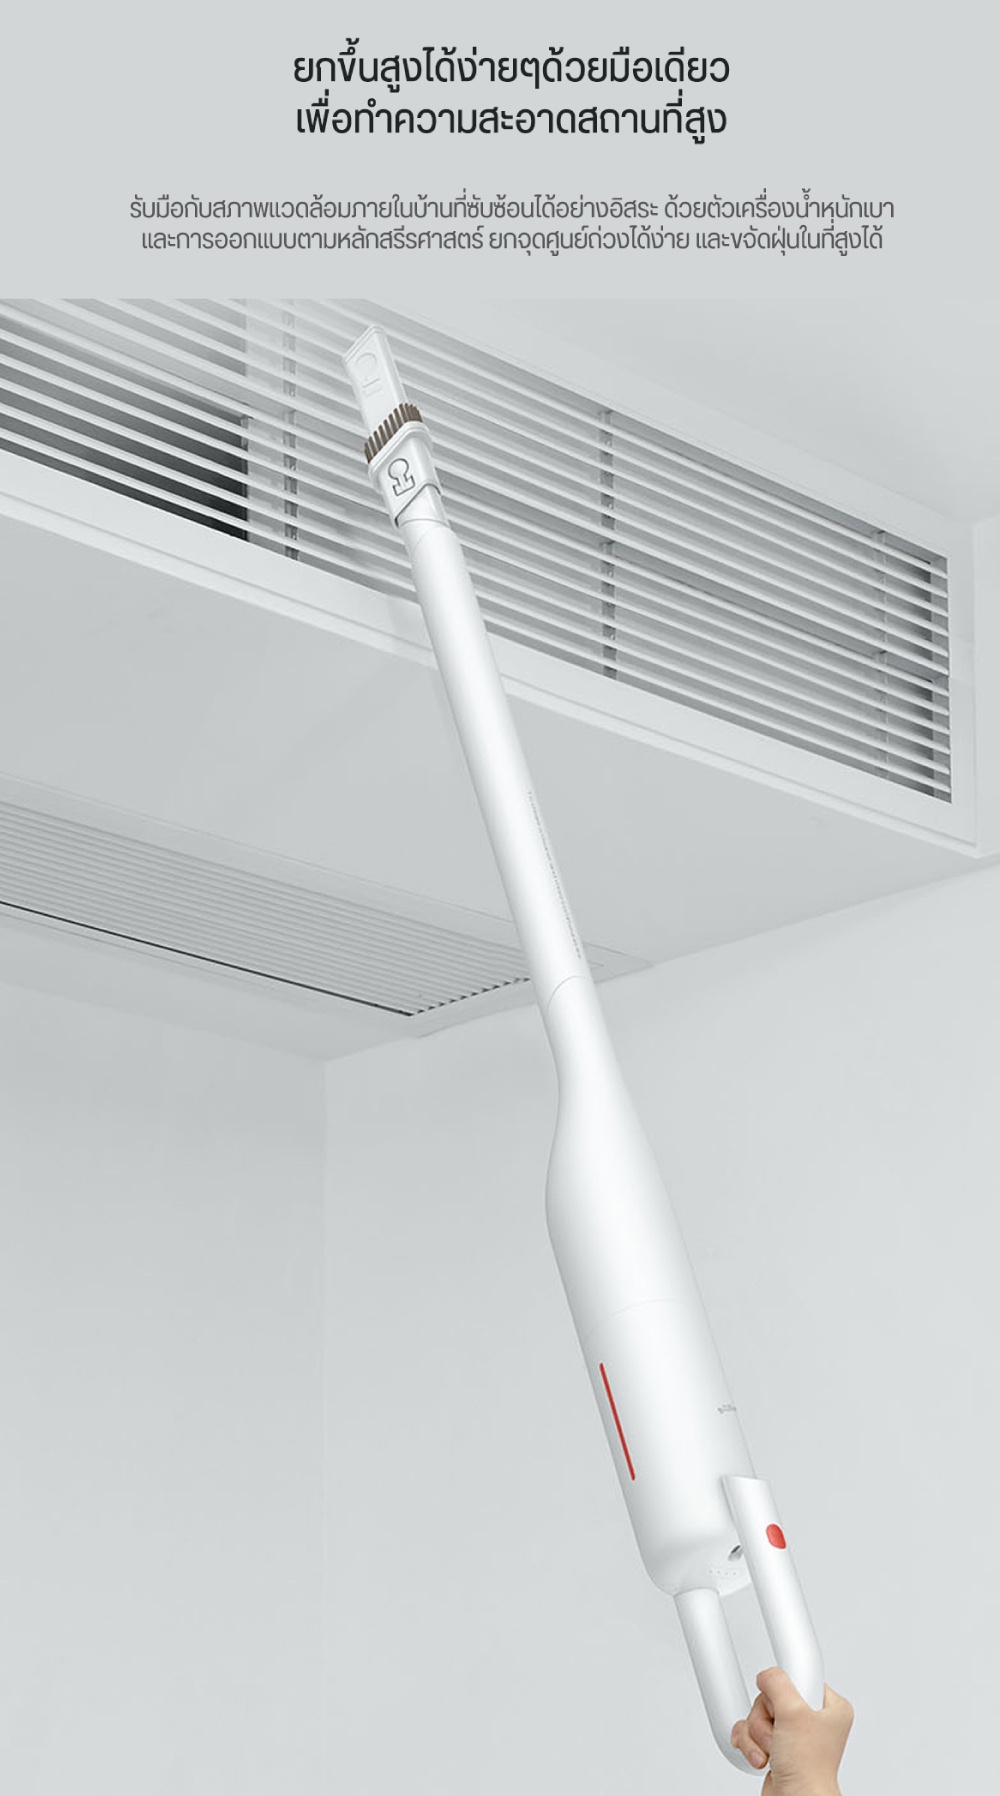 มุมมองเพิ่มเติมของสินค้า Deerma VC01 Vacuum Cleane เครื่องดูดฝุ่น เครื่องดูดฝุ่นไร้สาย ที่ดูดฝุ่น เครื่องดูดฝุ่น ทั่วไป เครื่องดูดฝุ่นในบ้าน